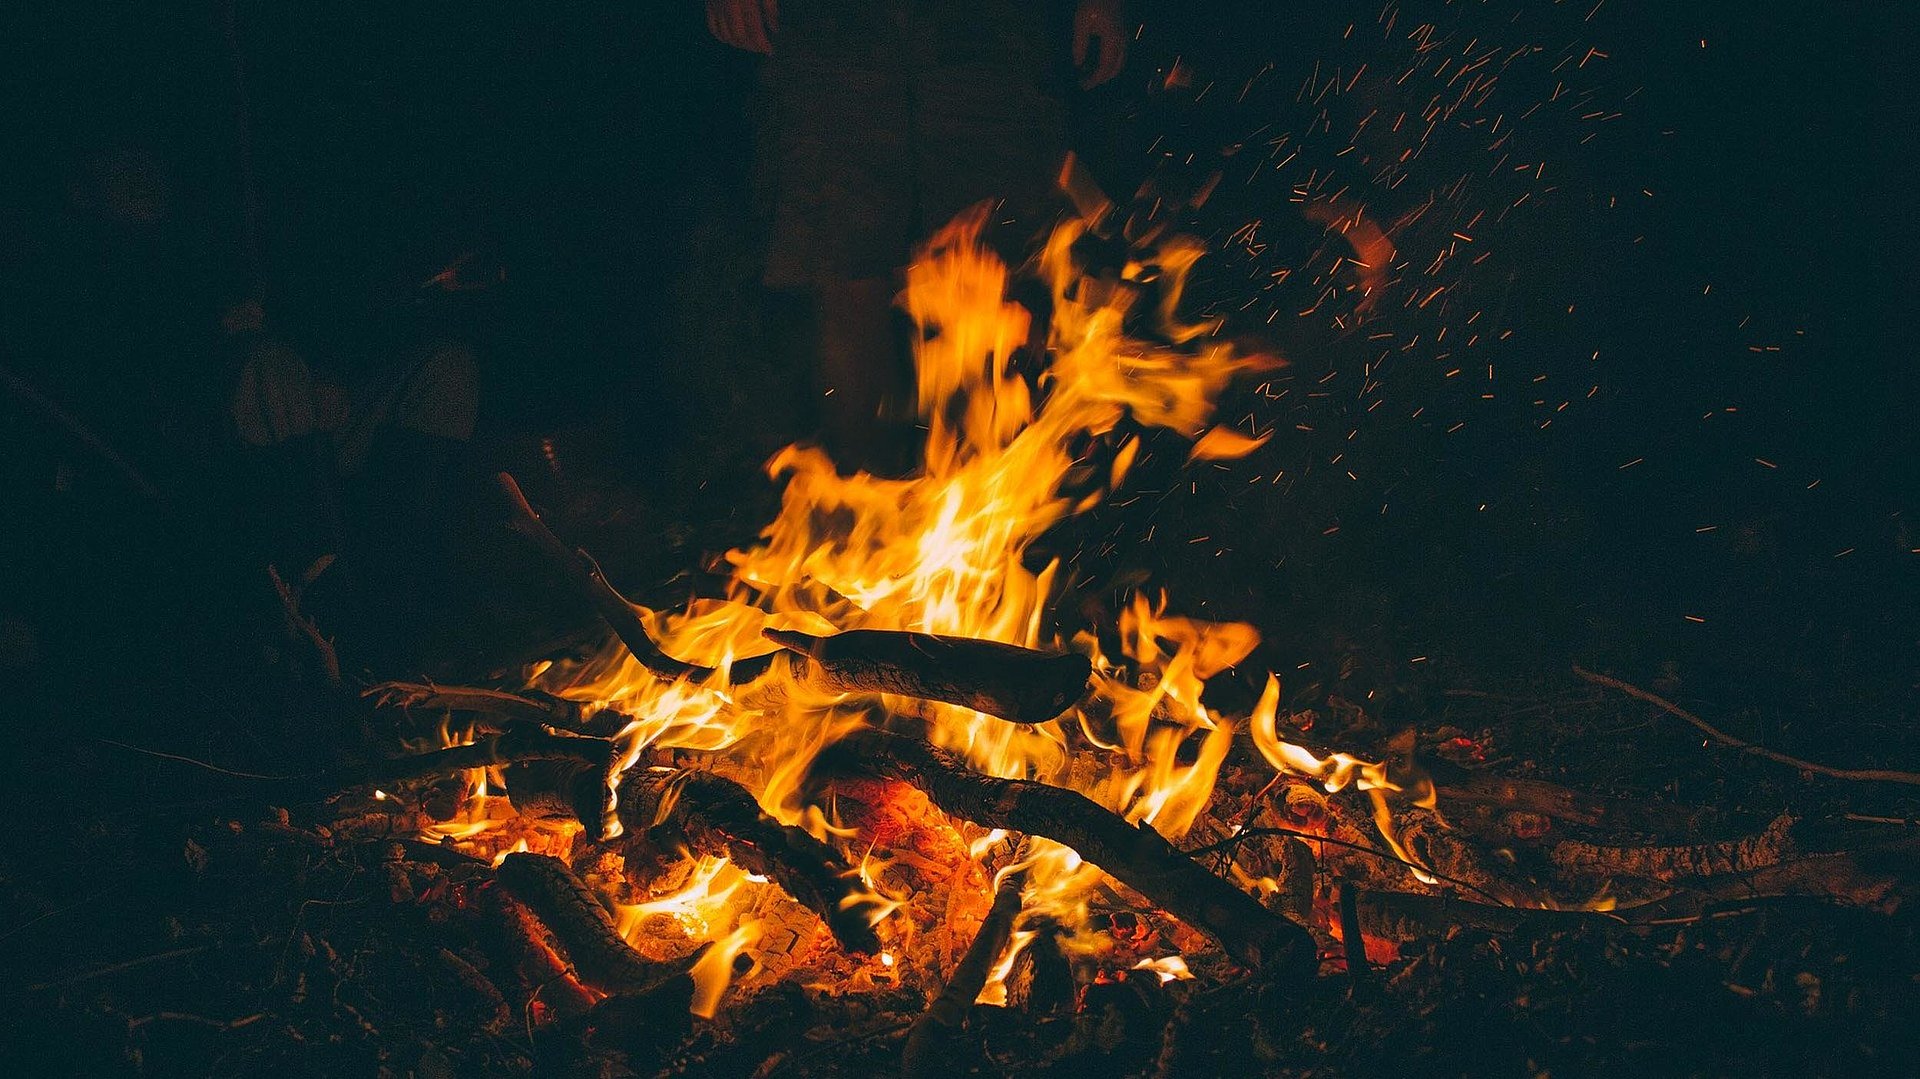 Camping im Fichtelgebirge - Person im Hintergrund eines Lagerfeuers bei Nacht